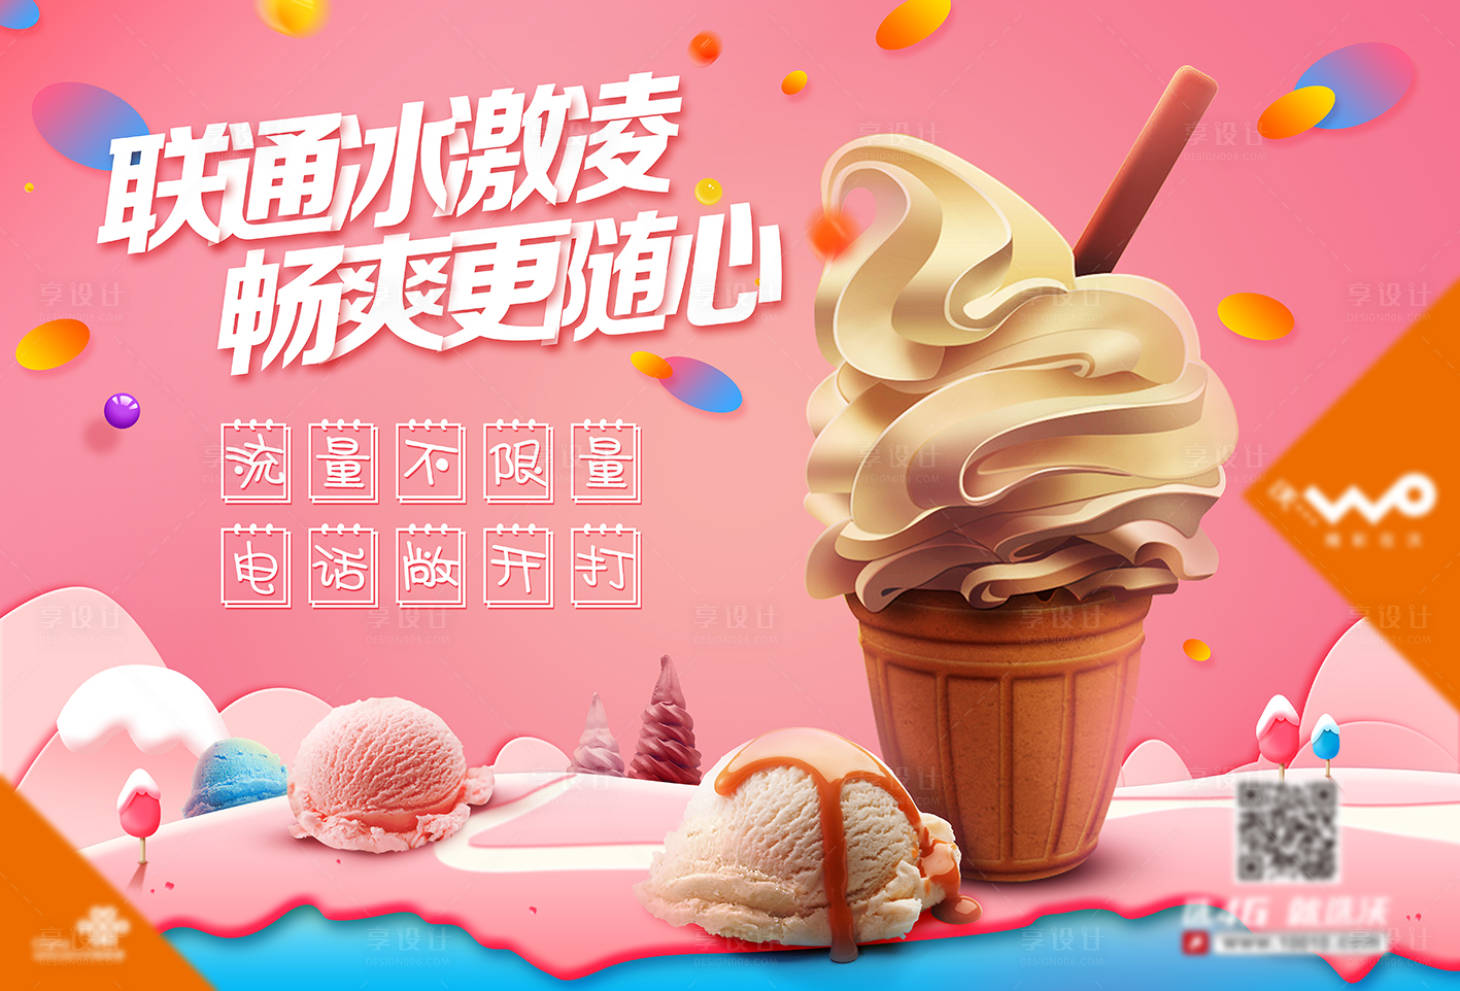 夏日凉爽冰淇淋海报红色色psd广告设计作品素材免费